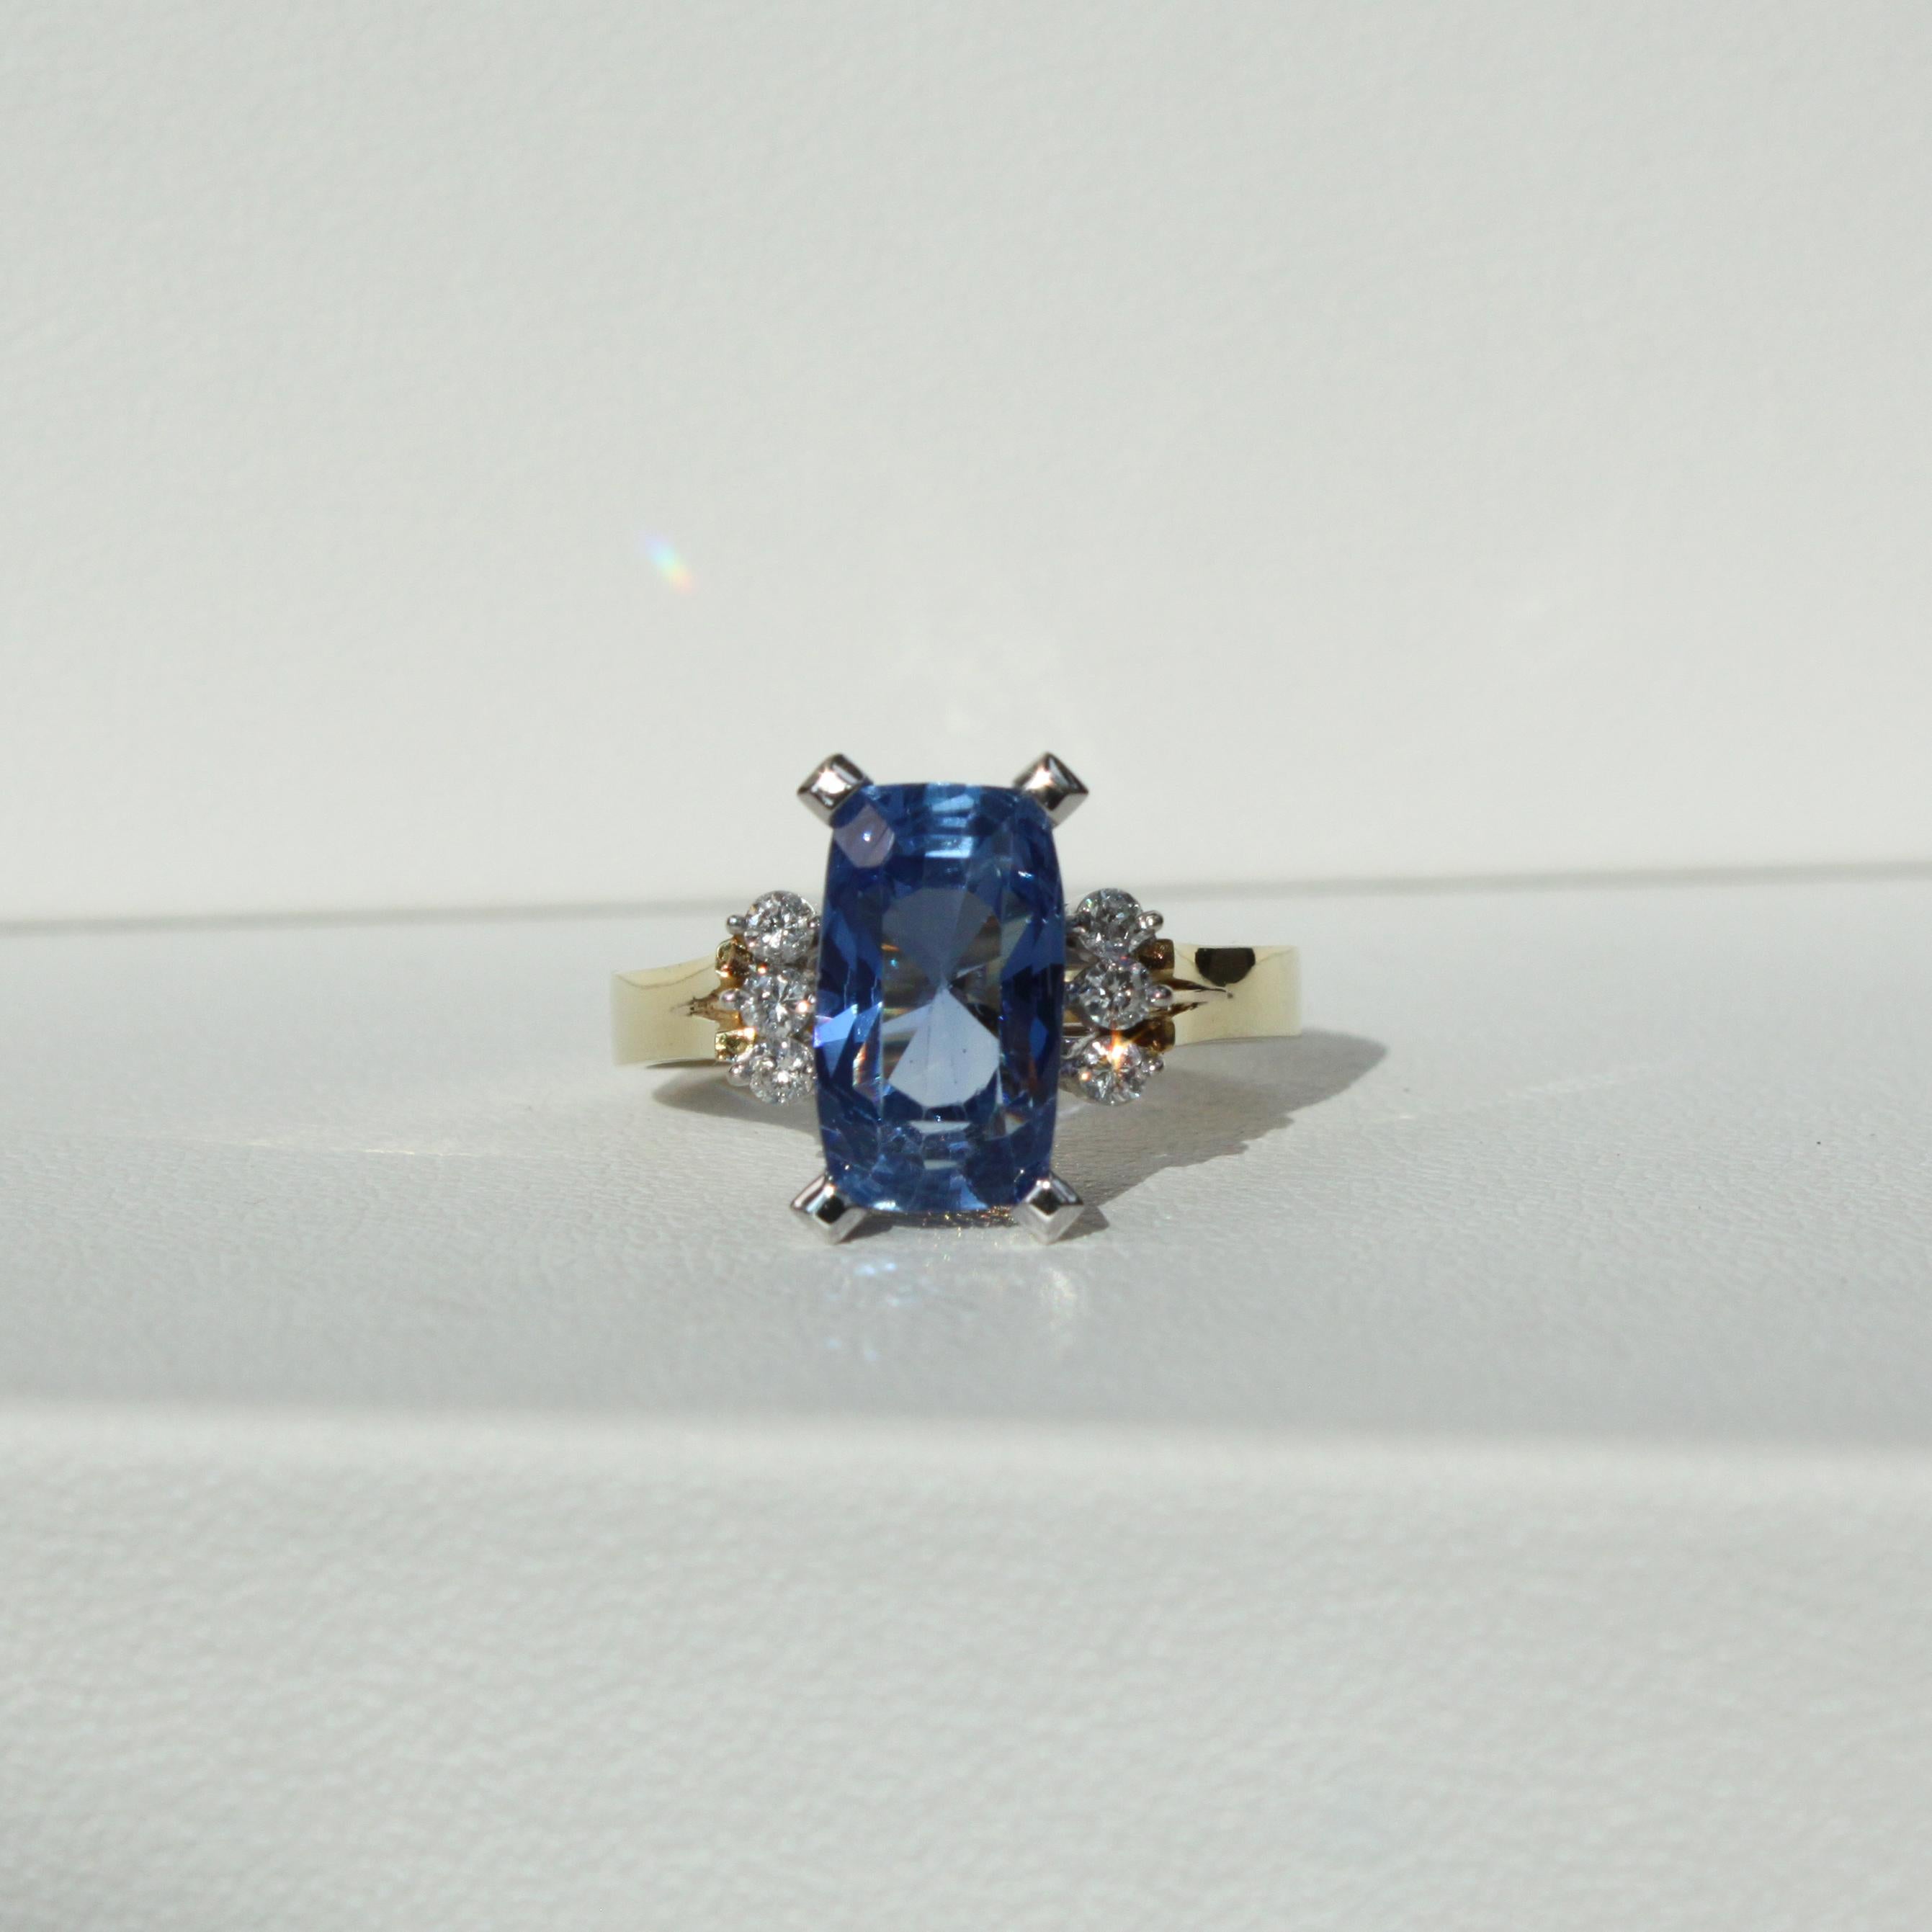 Metall - 18K Gold
6,98ct Unerhitzter Blauer Ceylon-Saphir
0,18ct Natürliche Diamanten der Farbe D-G
Gesamtgewicht des Rings 6,34 g
Ring Größe 58 EU / 8.5 US / 18.5mm

Gönnen Sie sich den Charme einer vergangenen Ära mit unserem mit natürlichen